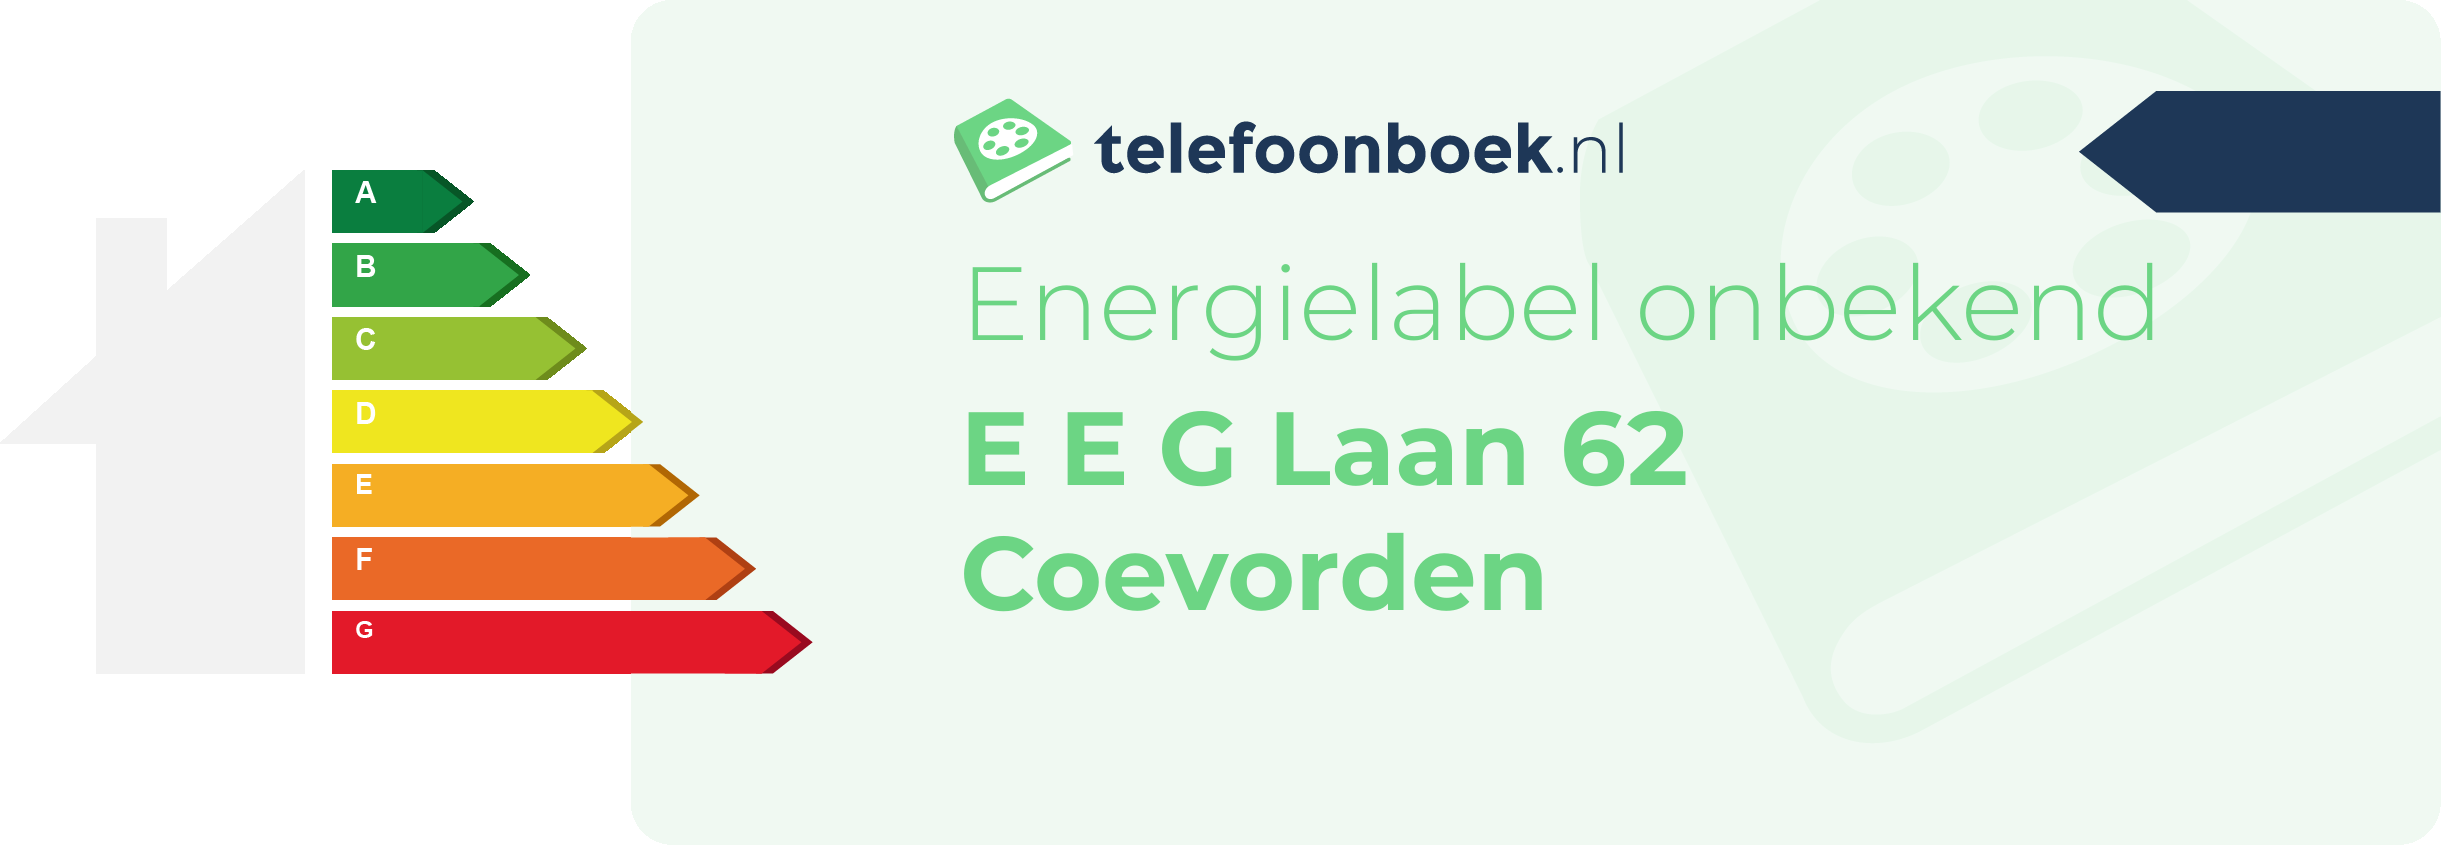 Energielabel E E G Laan 62 Coevorden